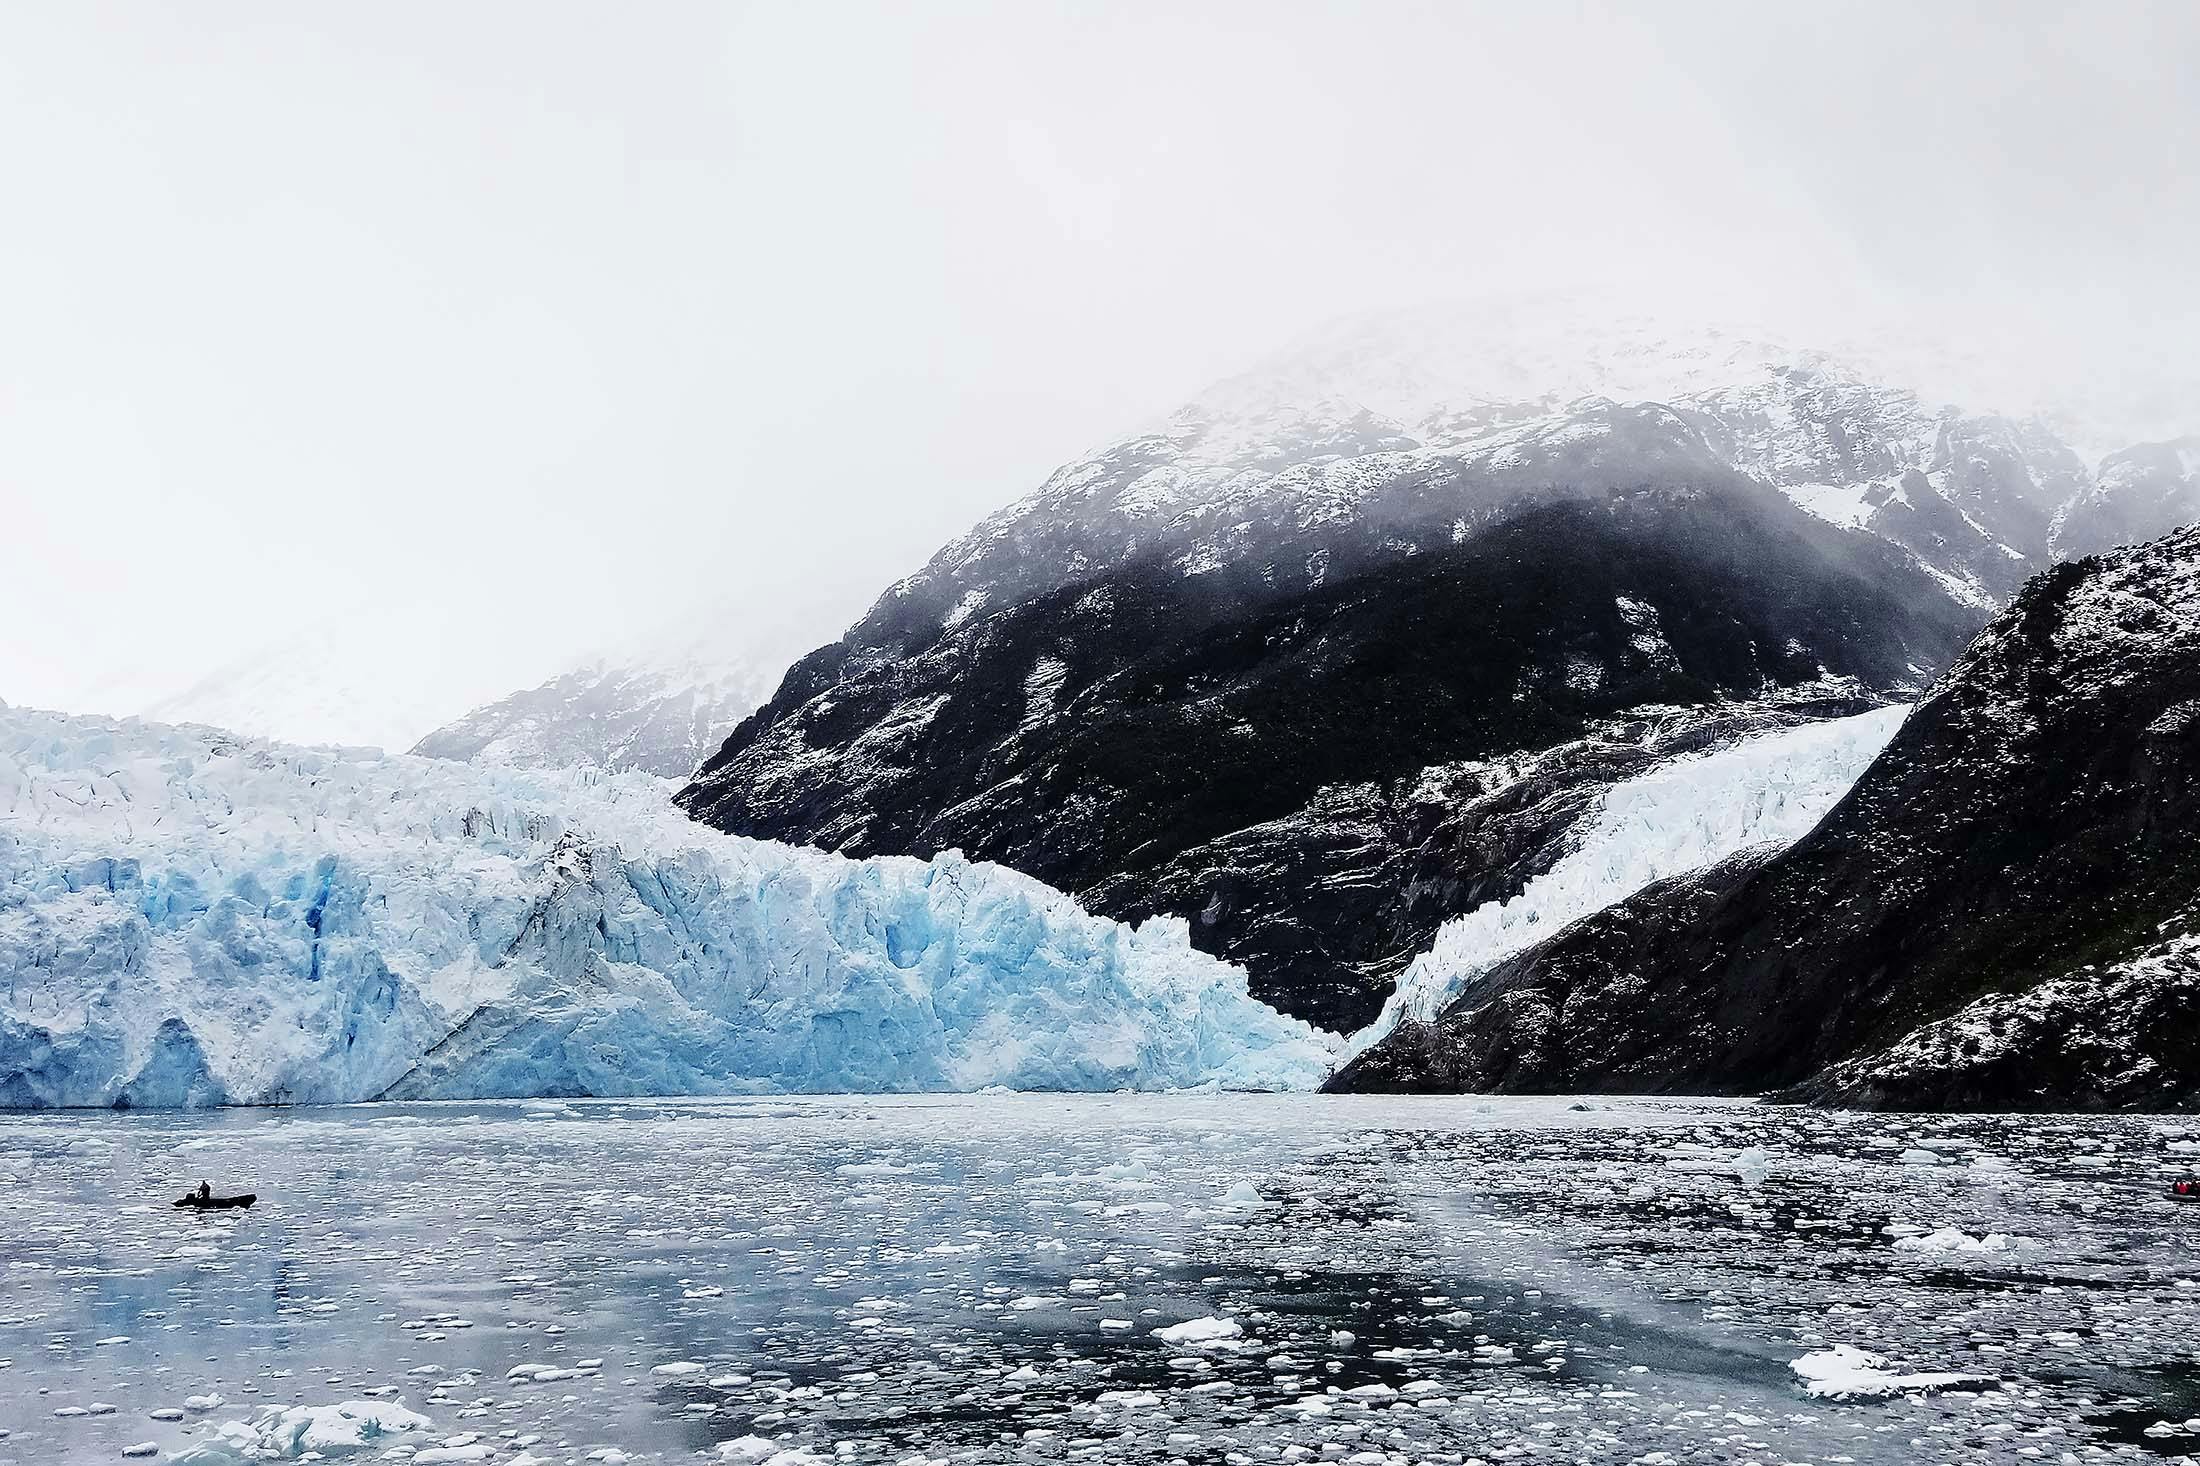 glaciers in Chile's fjords